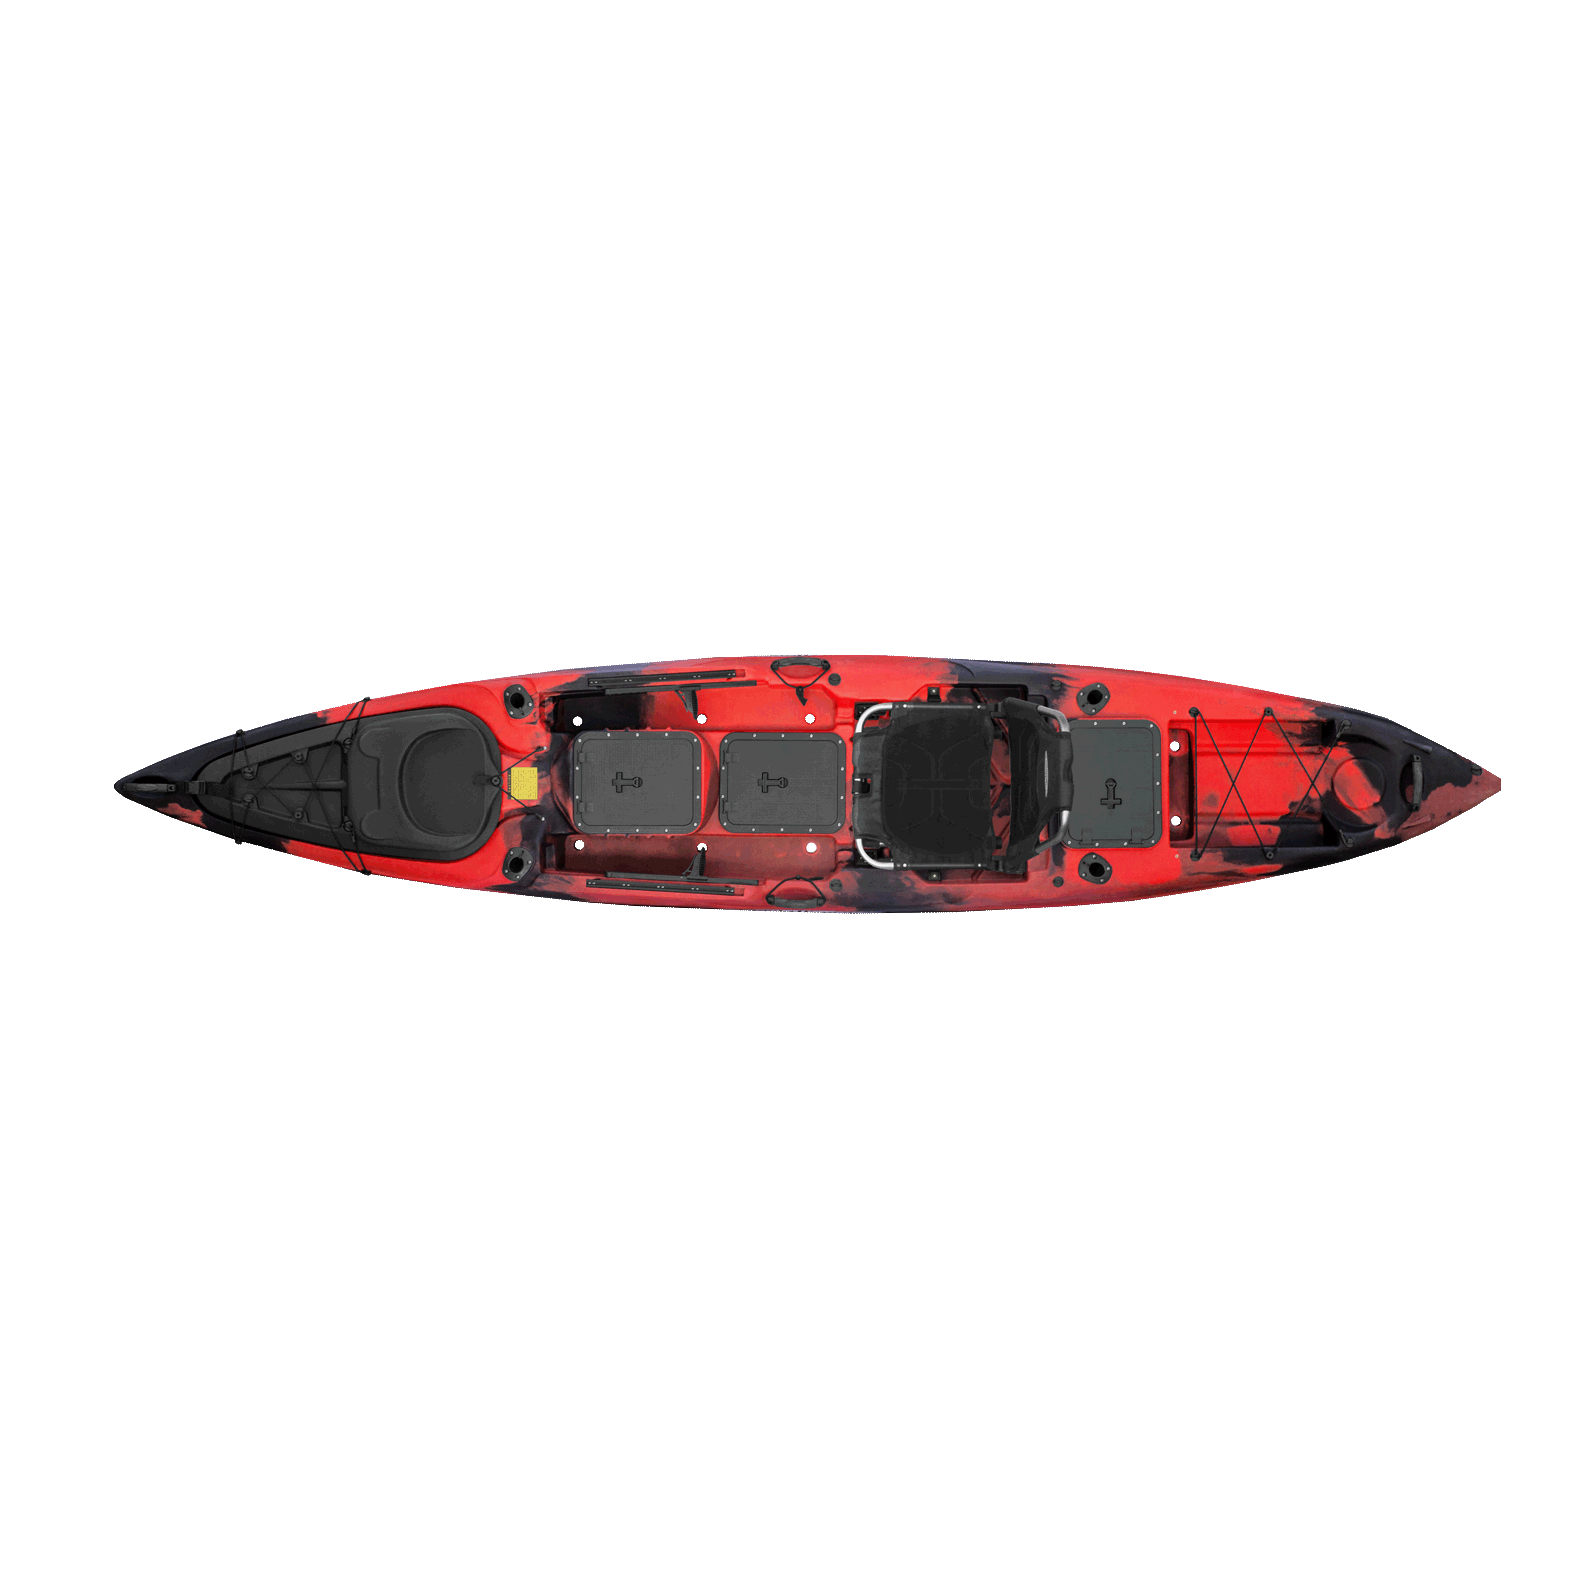 Malibu Kayaks X-Factor Fish & Dive Kayak 2018 | Camo Colors - Kayak Creek